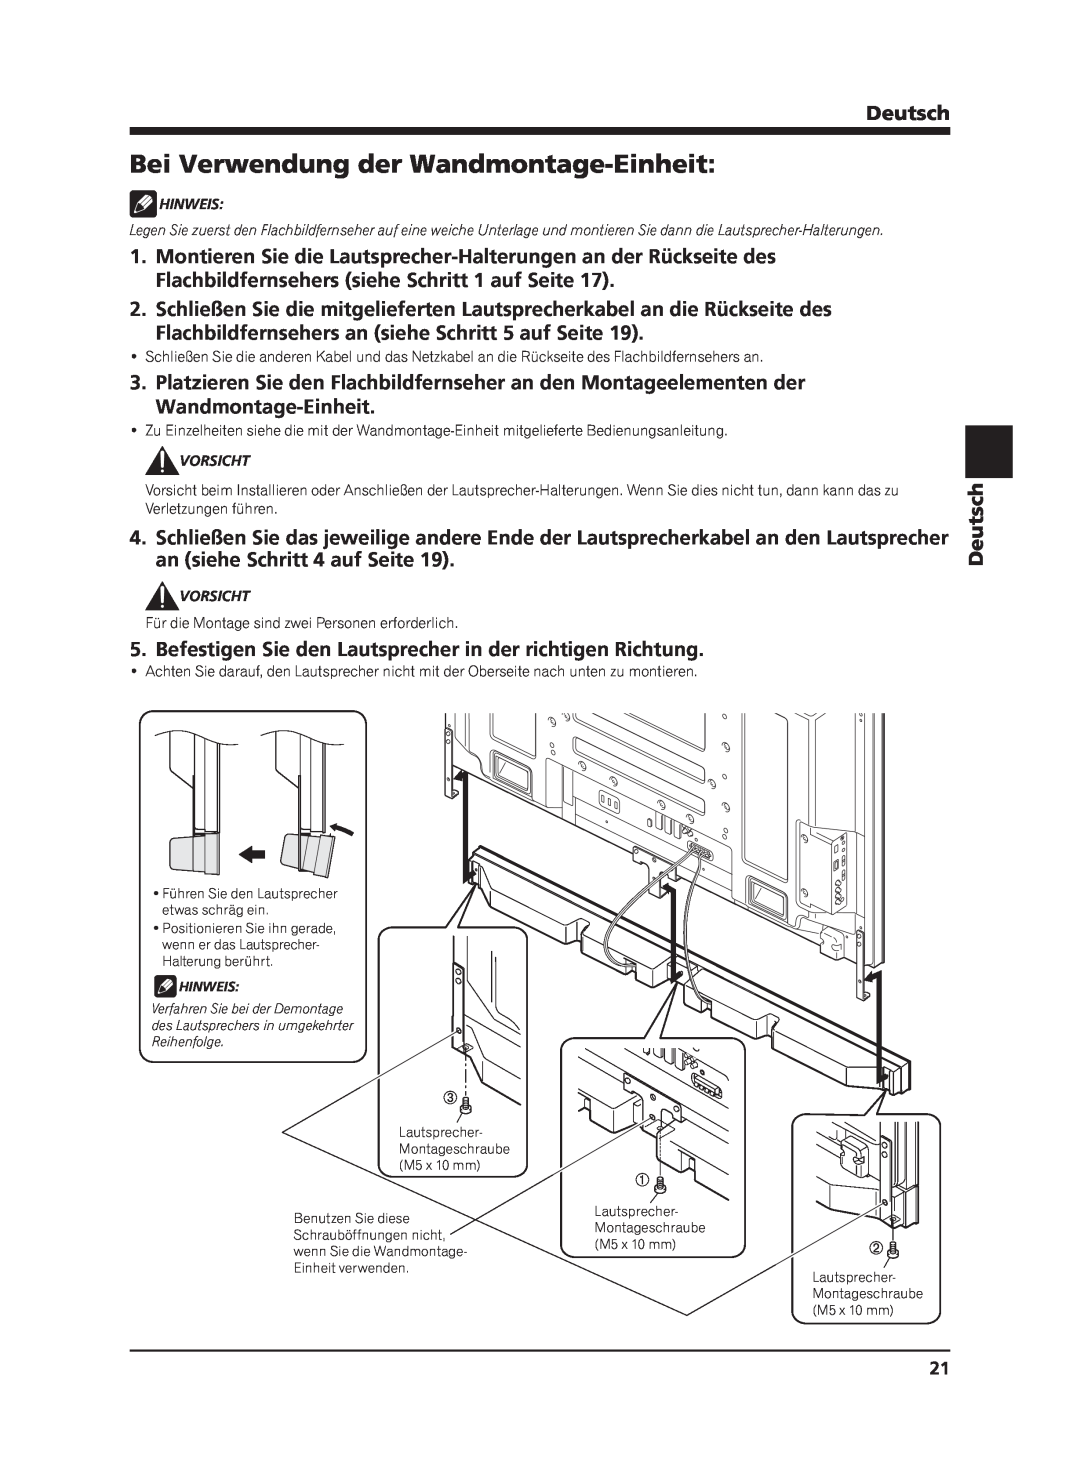 Pioneer PDP-S63 manual Bei Verwendung der Wandmontage-Einheit, Flachbildfernsehers an siehe Schritt 5 auf Seite, Deutsch 